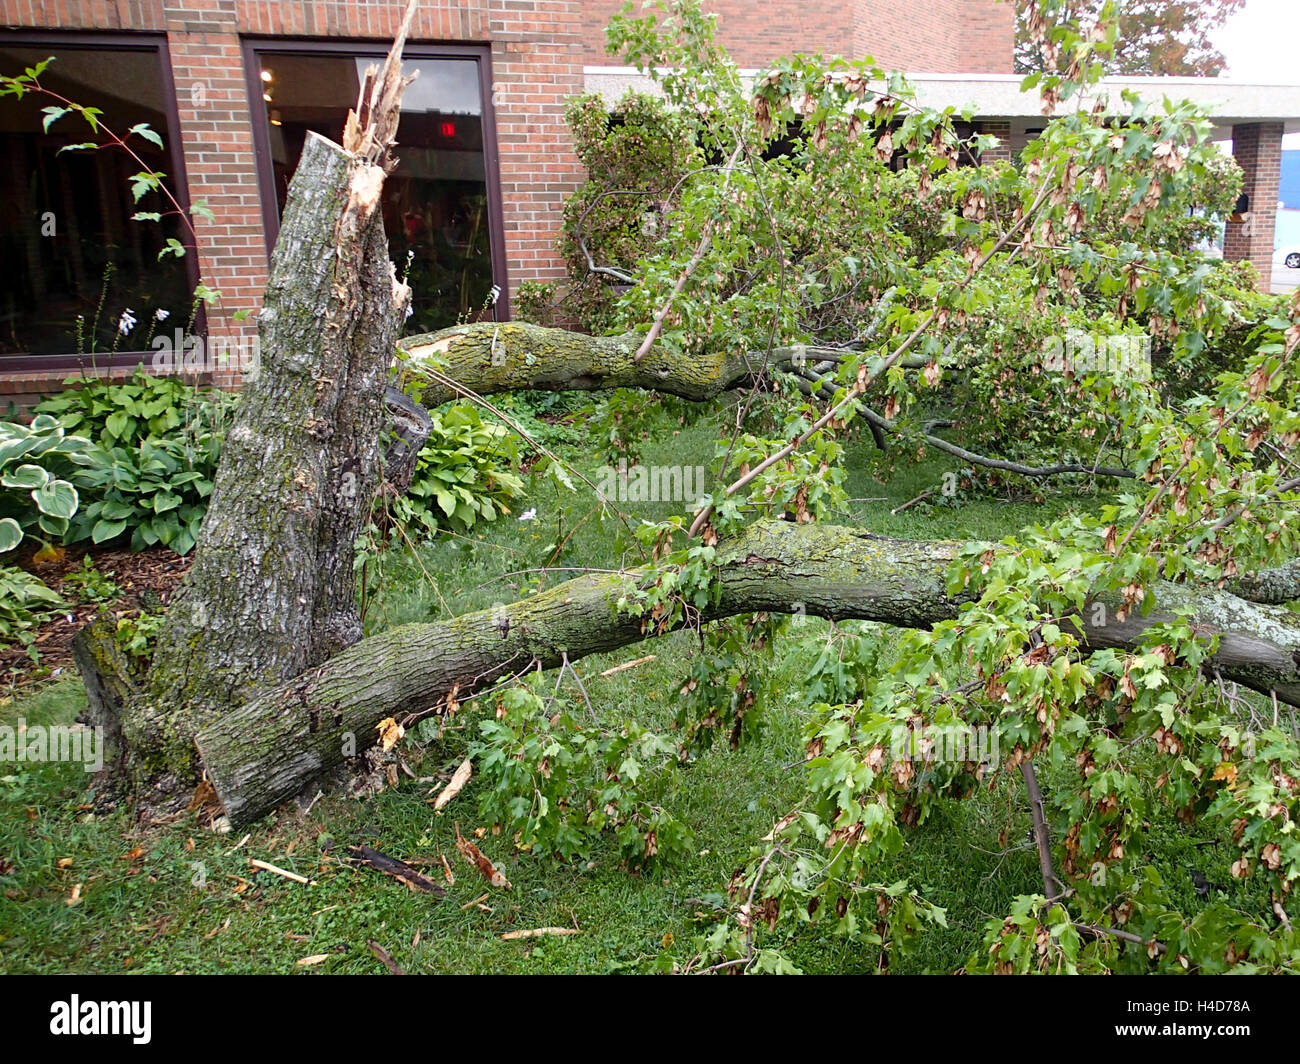 Thunder storm e un tornado causano un albero delle proprietà danneggiate Foto Stock